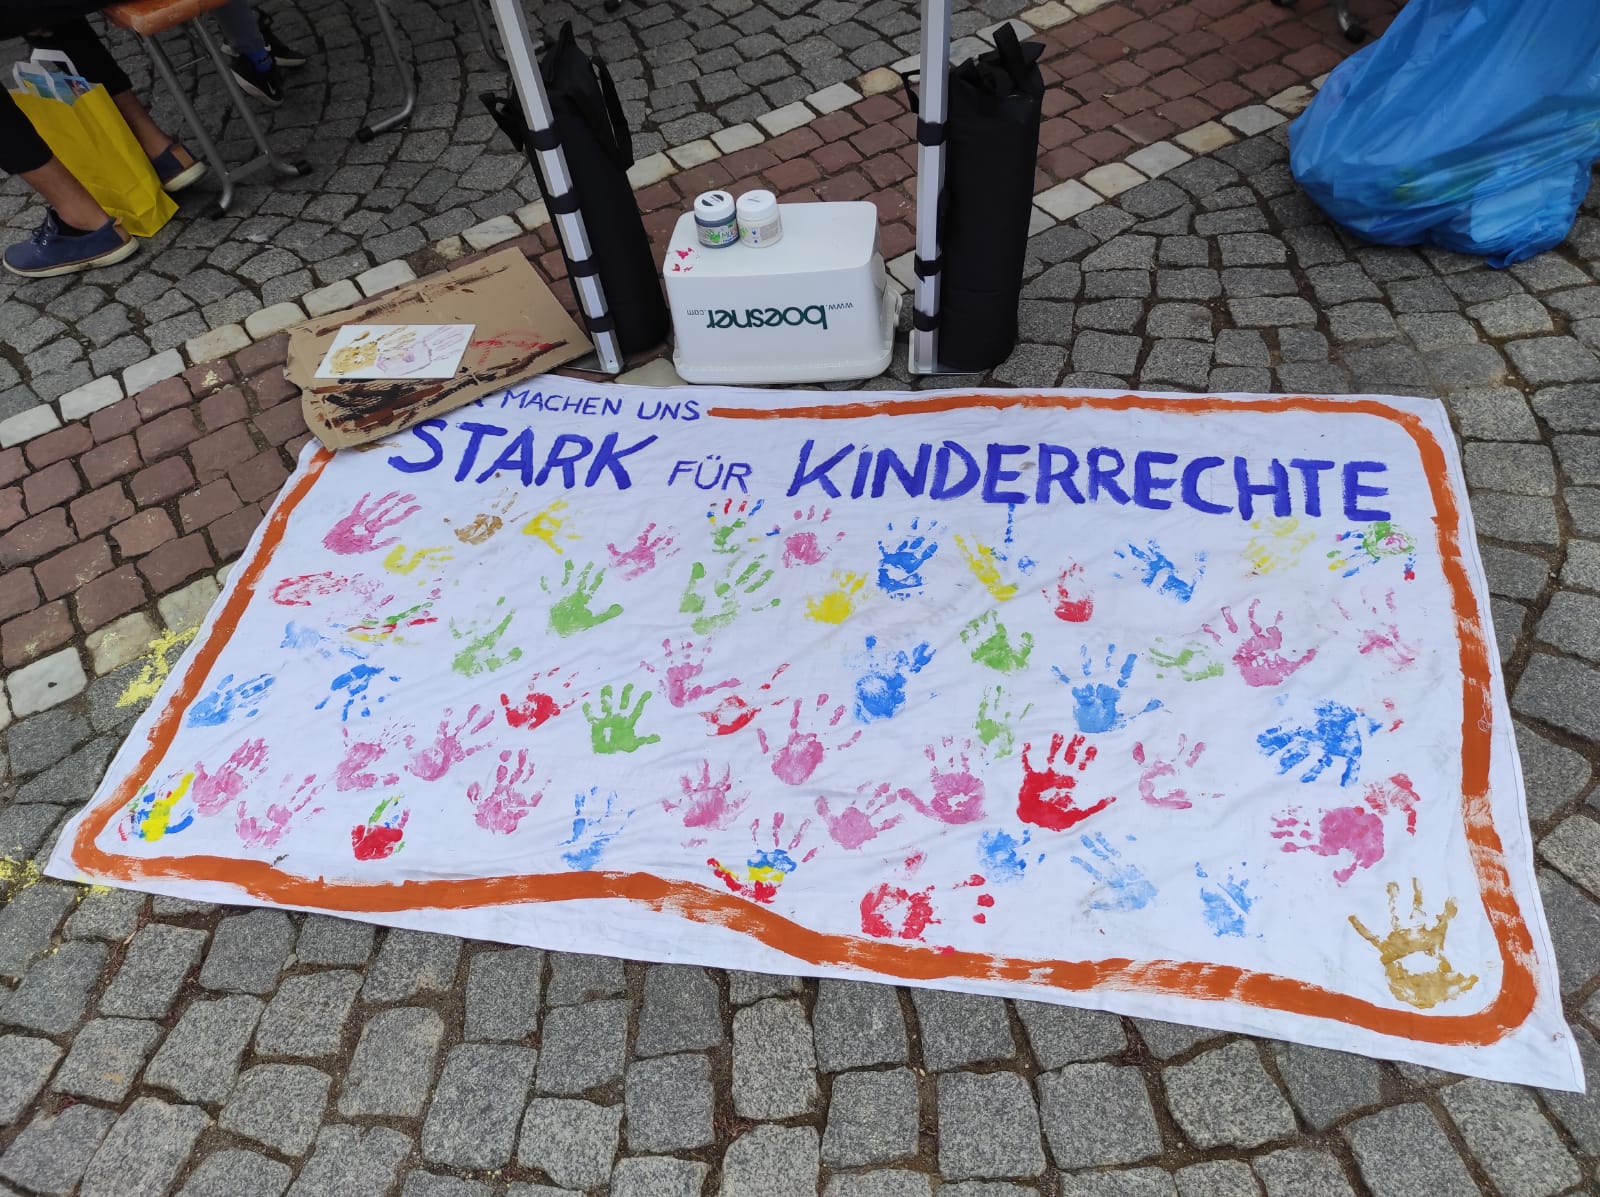 Ein Banner mit dem Text "Stark für Kinderrechte" liegt auf dem Boden